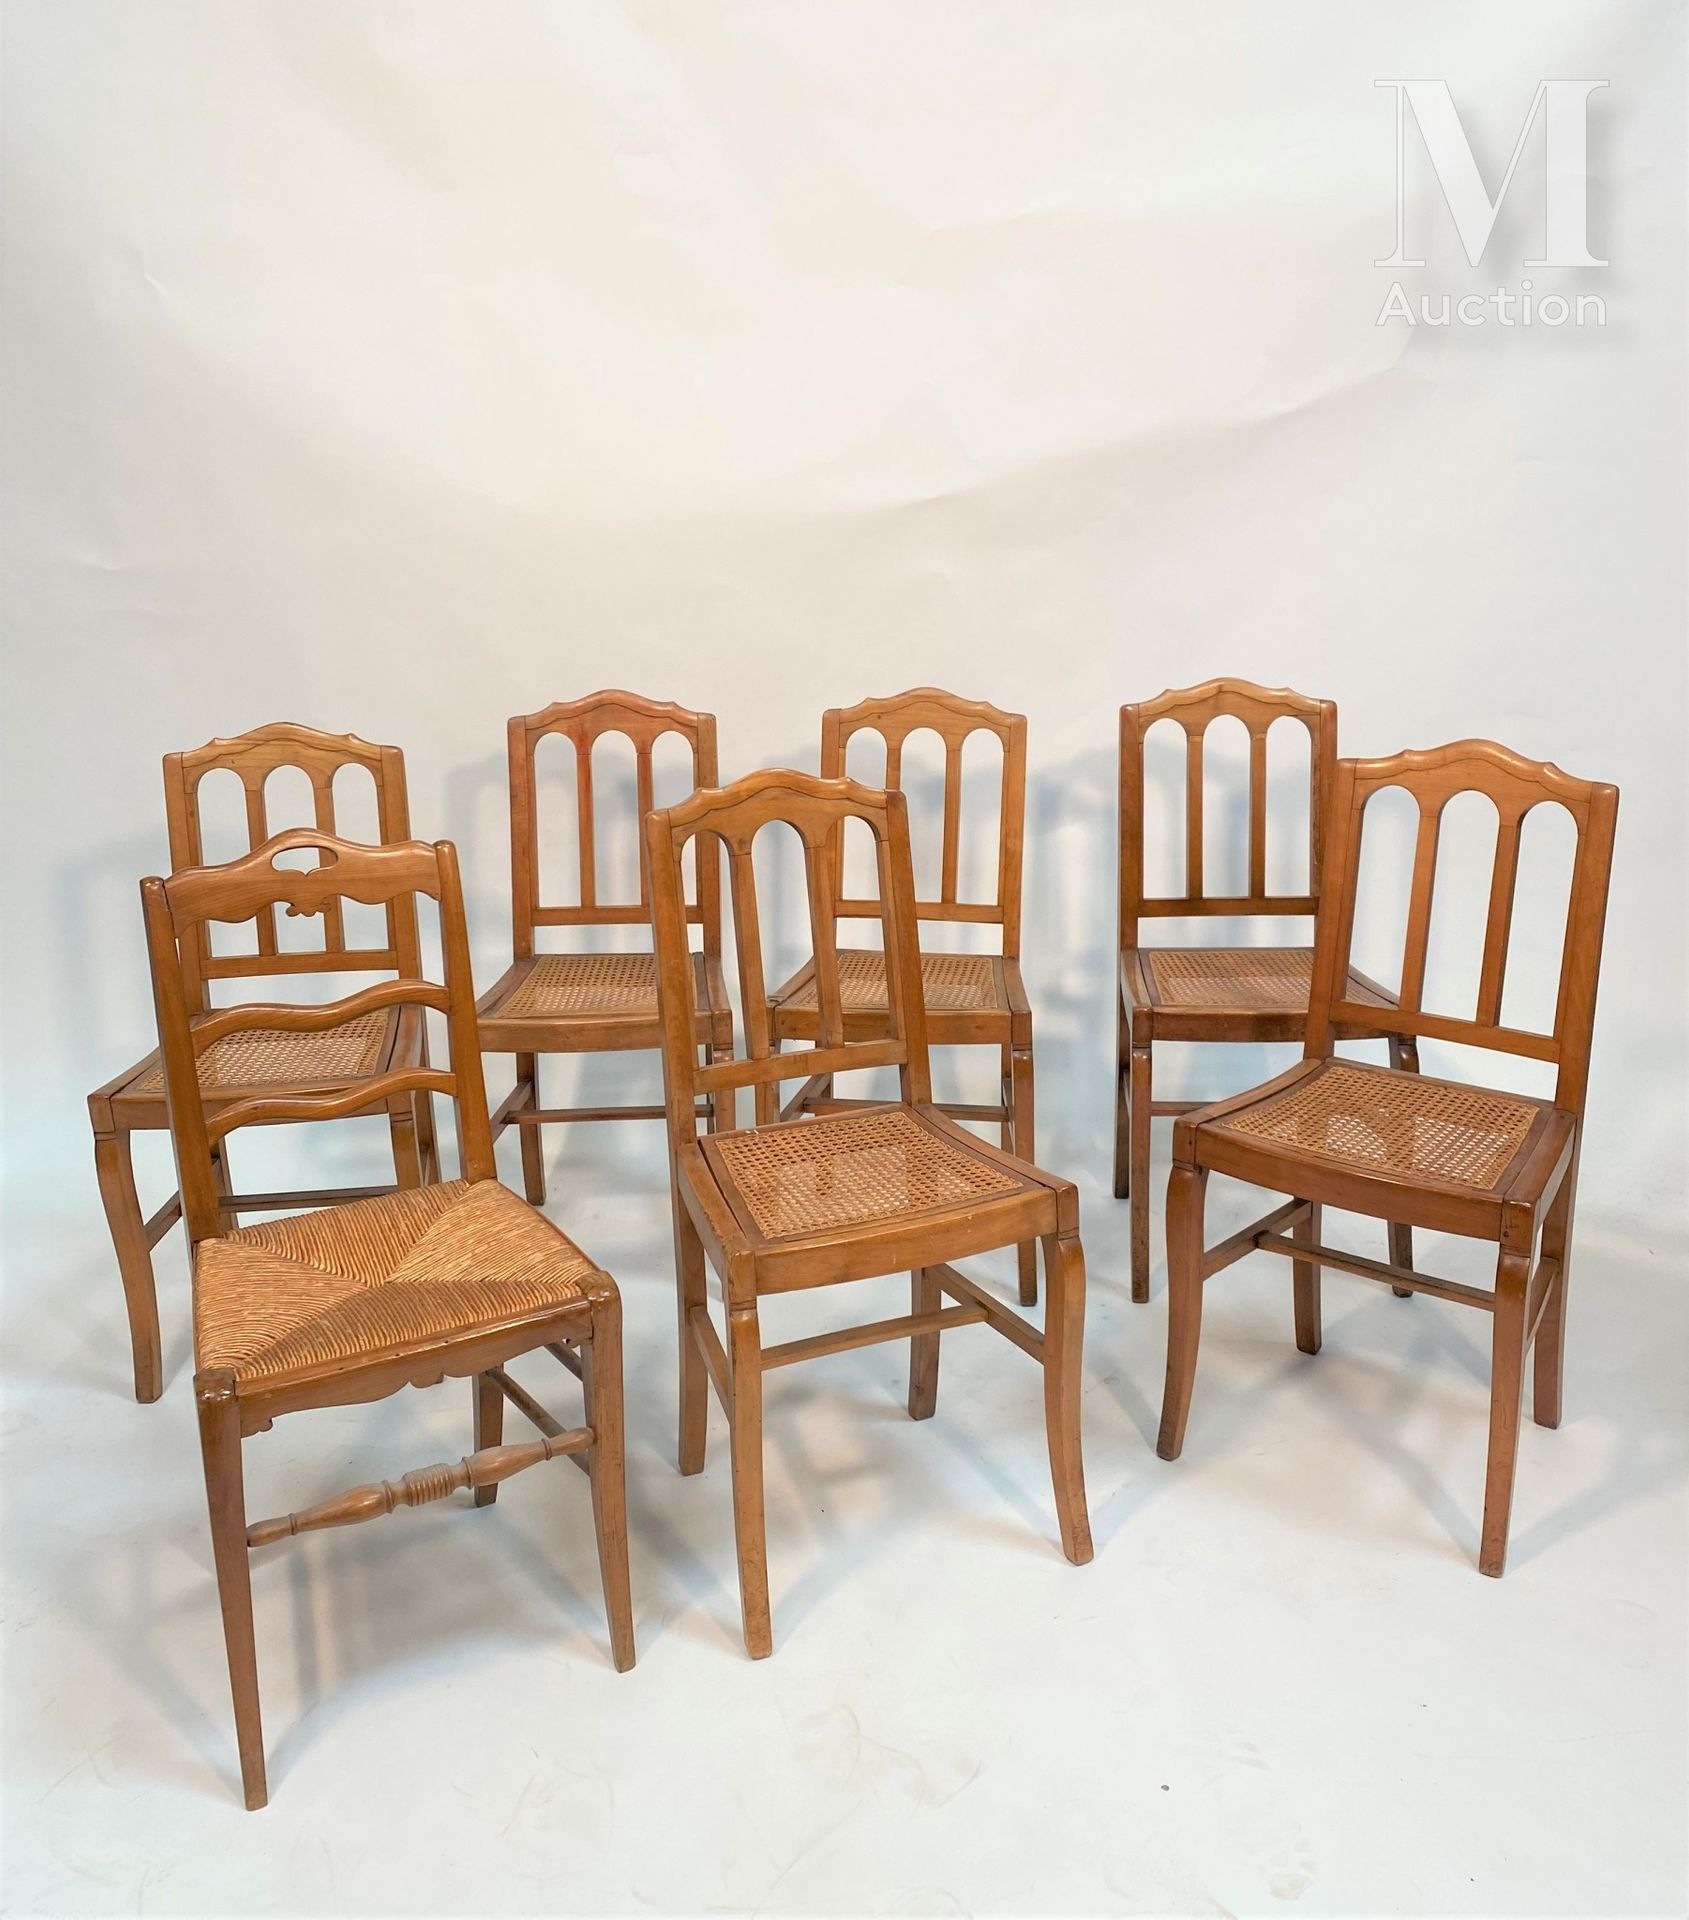 ENSEMBLE DE SIX CHAISES in legno naturale con tre archi sul retro

Una sedia di &hellip;